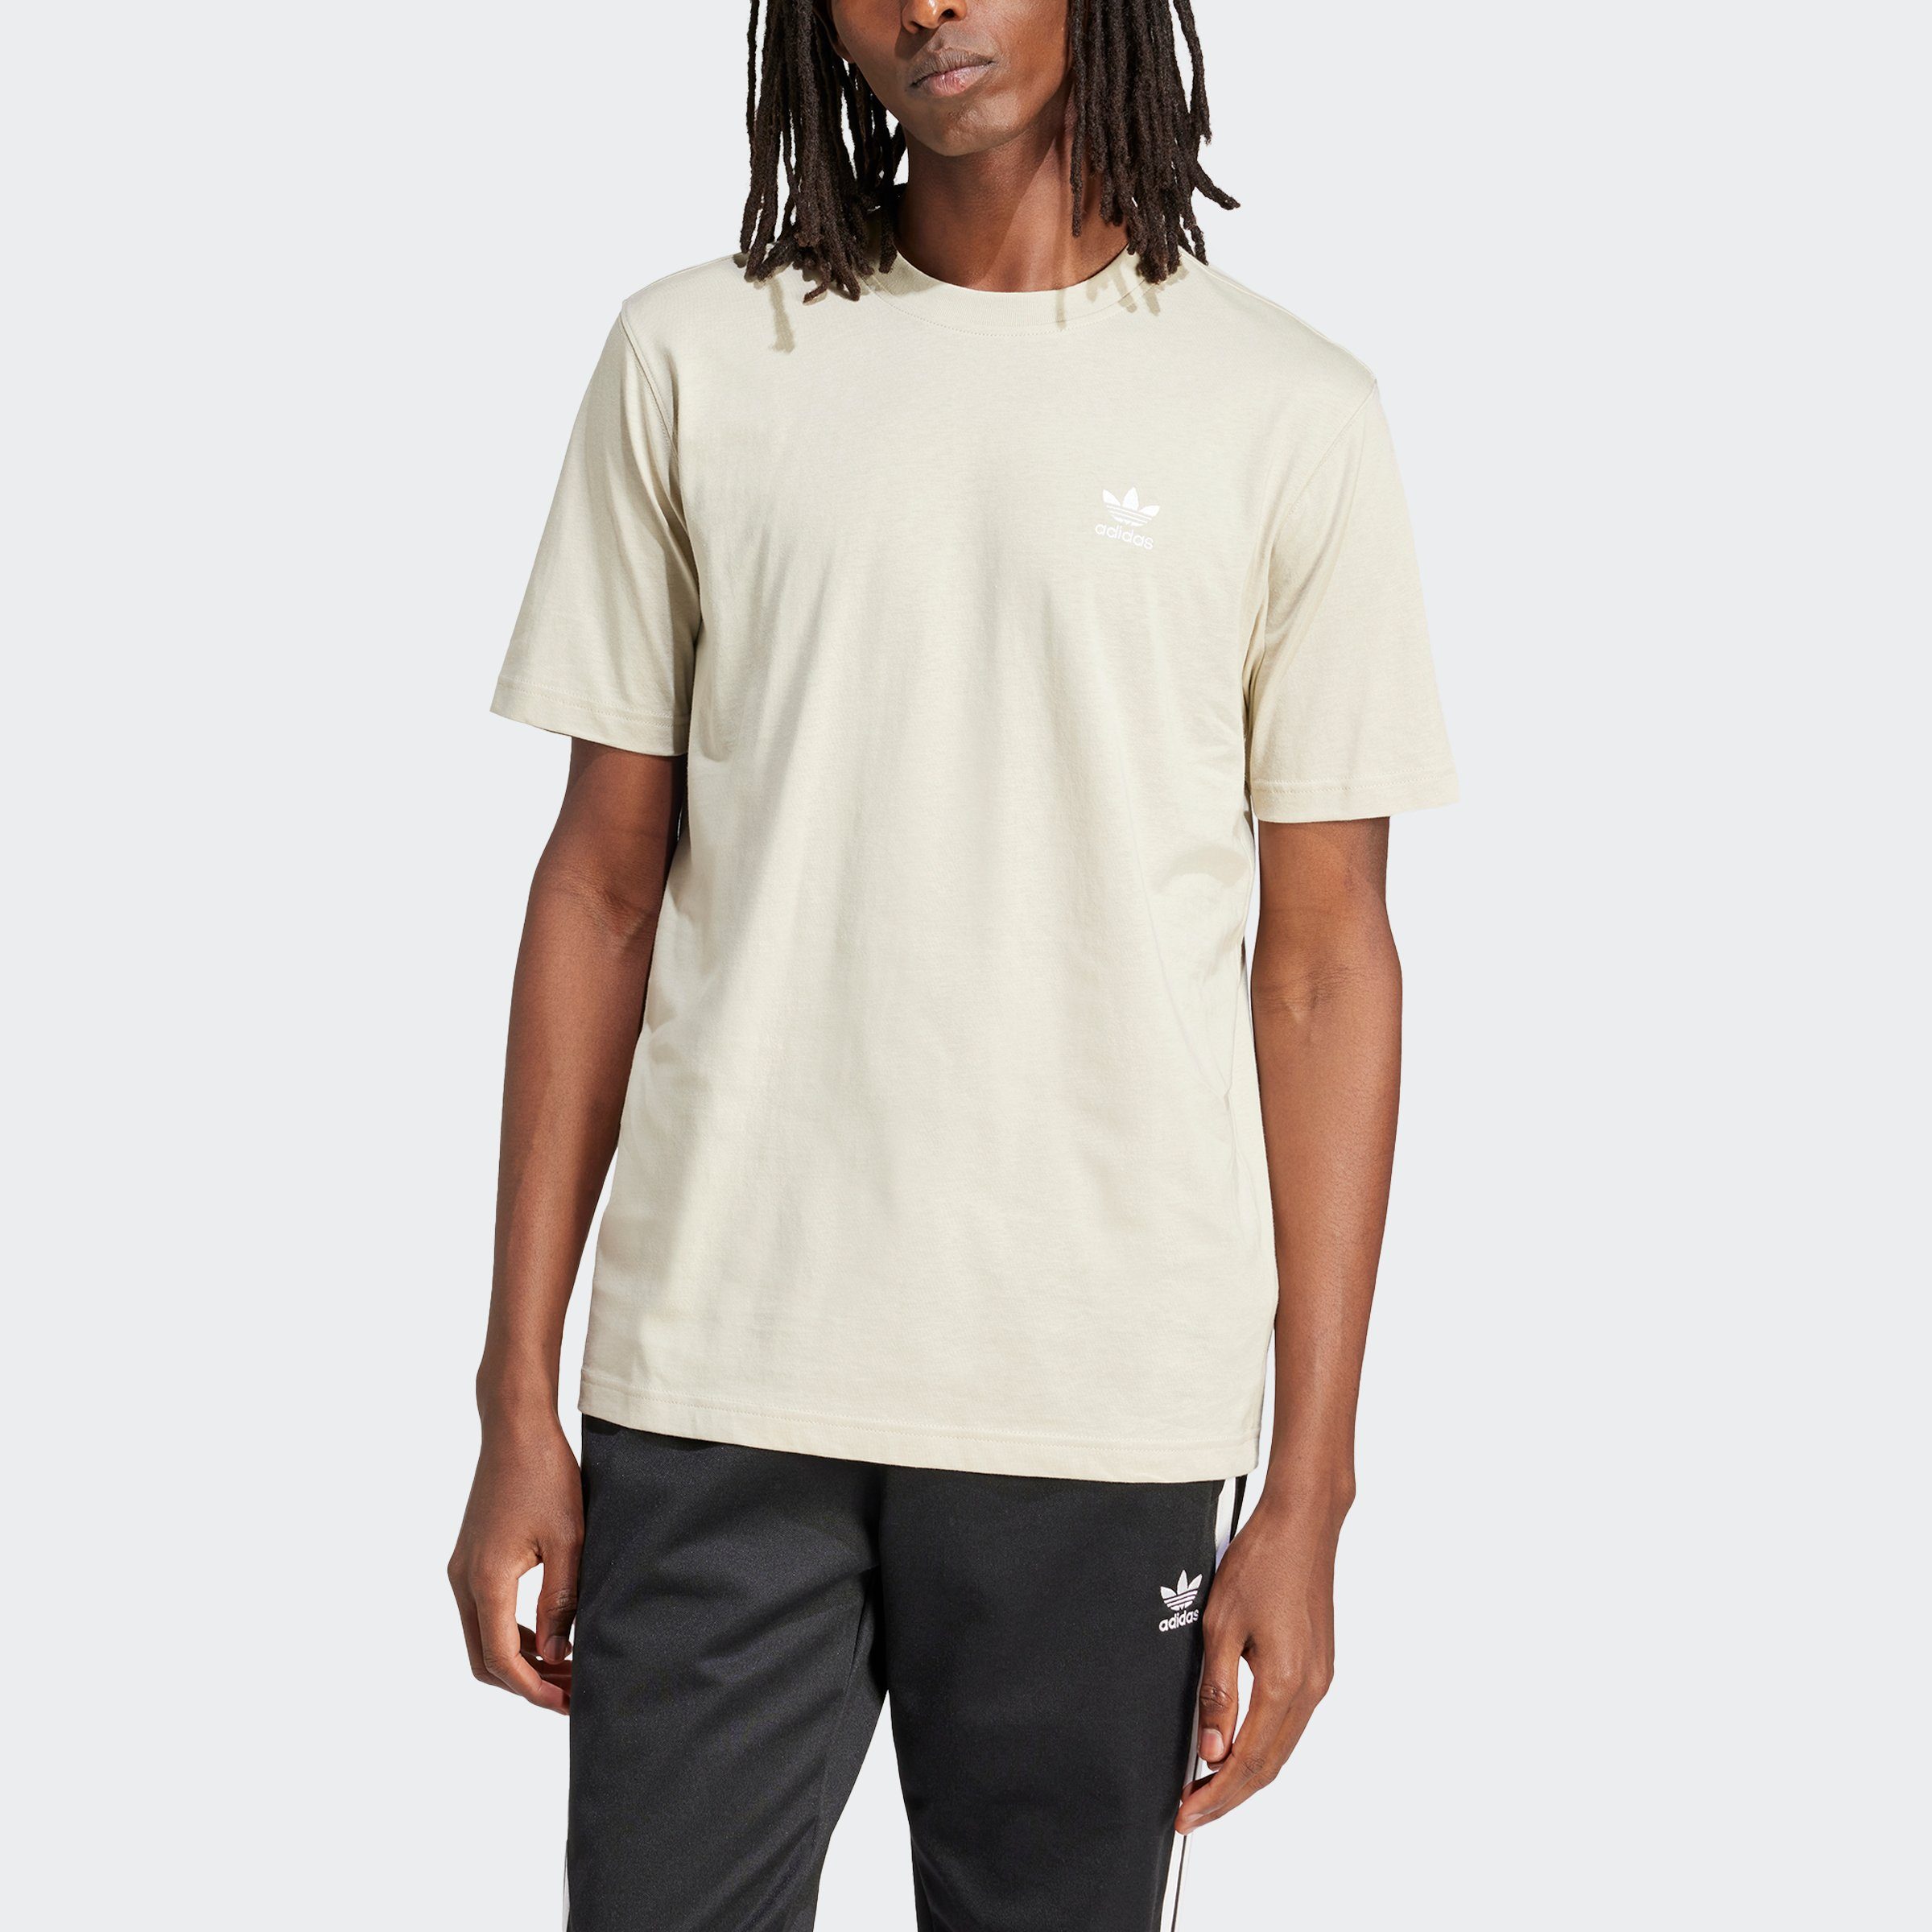 Adidas Originals Essentials T-shirt T-shirts Heren putty grey maat: XL beschikbare maaten:S M L XL